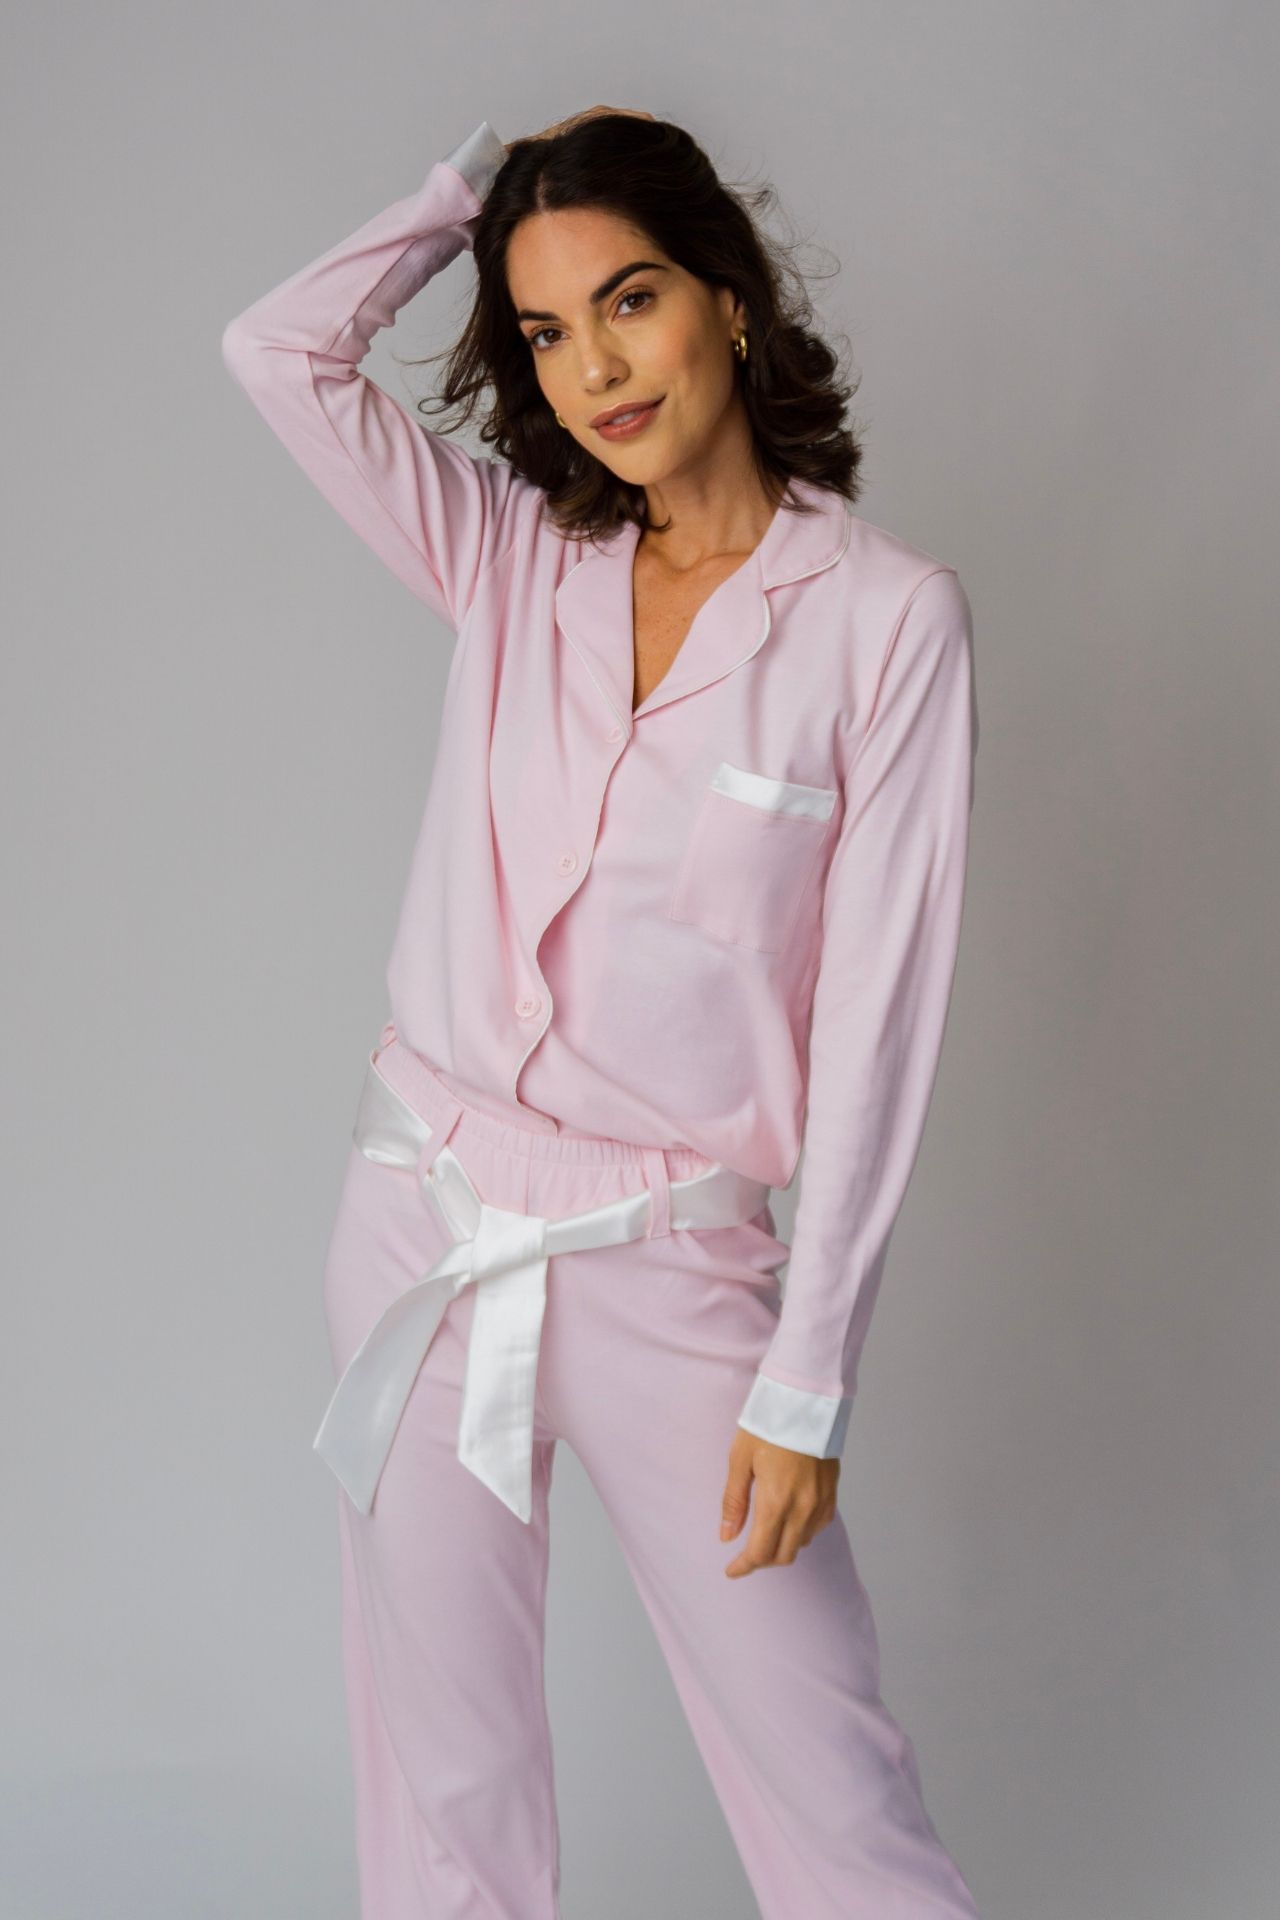 ¡Best-seller! Pijama de algodón pima premium con detalles en seda. Cuidados: no usar secadora, lavar con agua fria. La correa de seda es removible.
